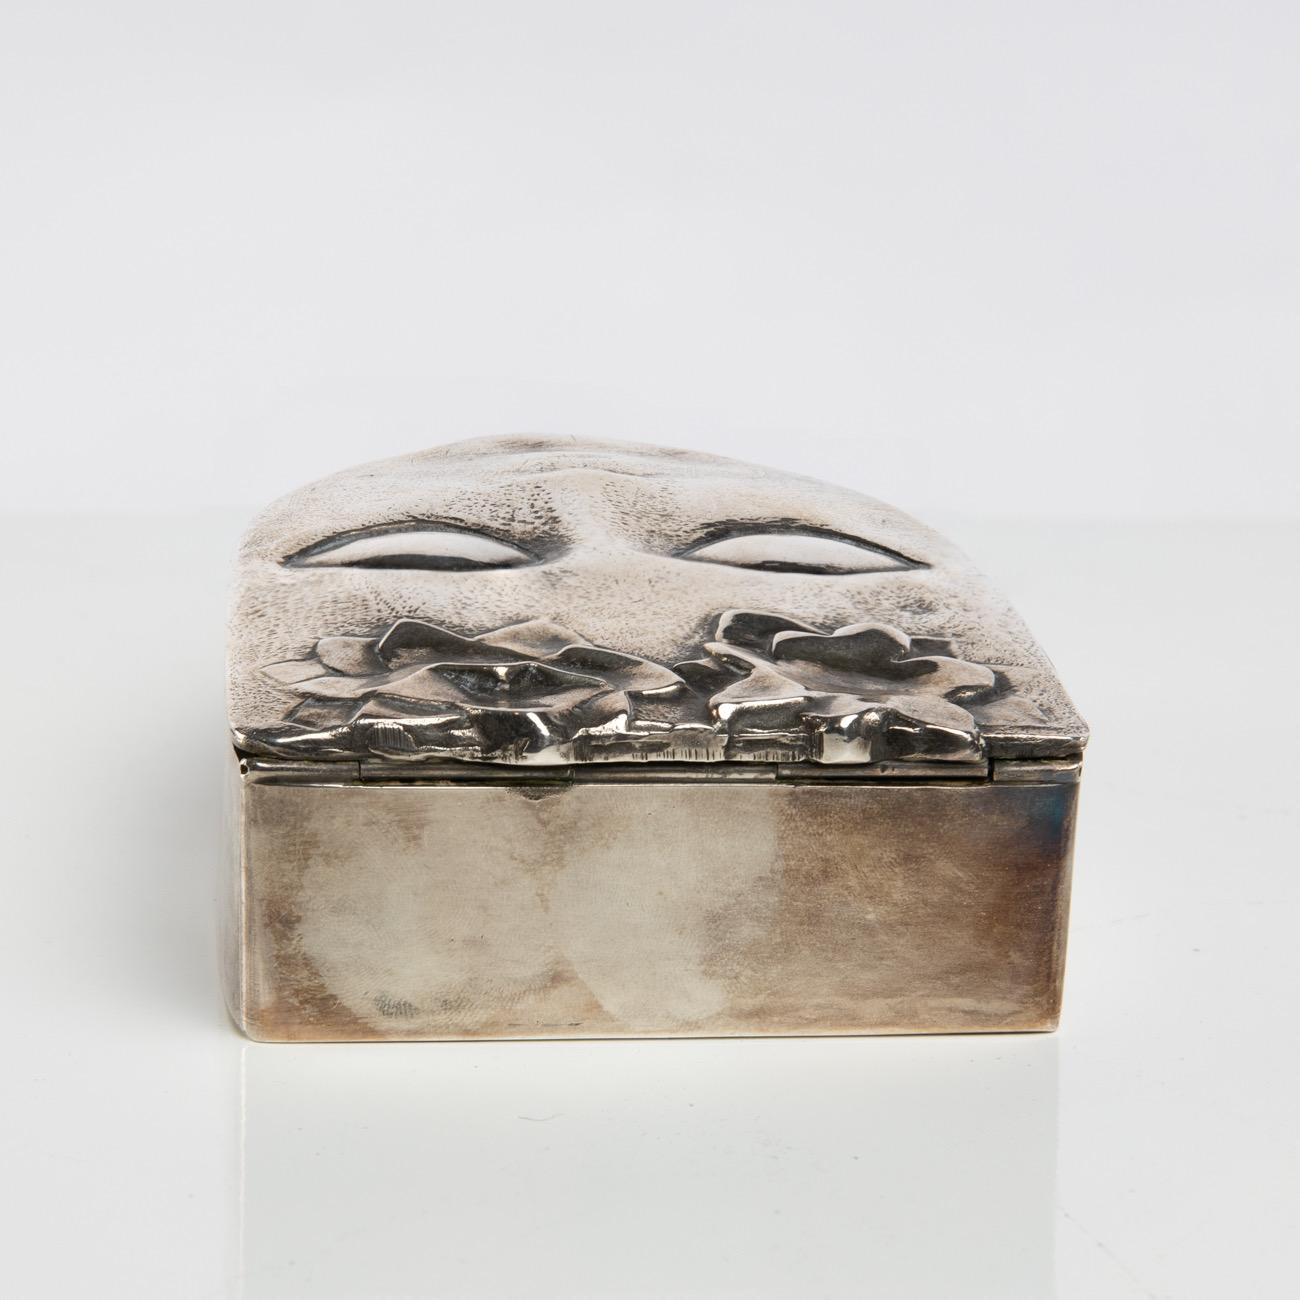 Silvered Bronze Box “Ophélie”, Line Vautrin, France 1